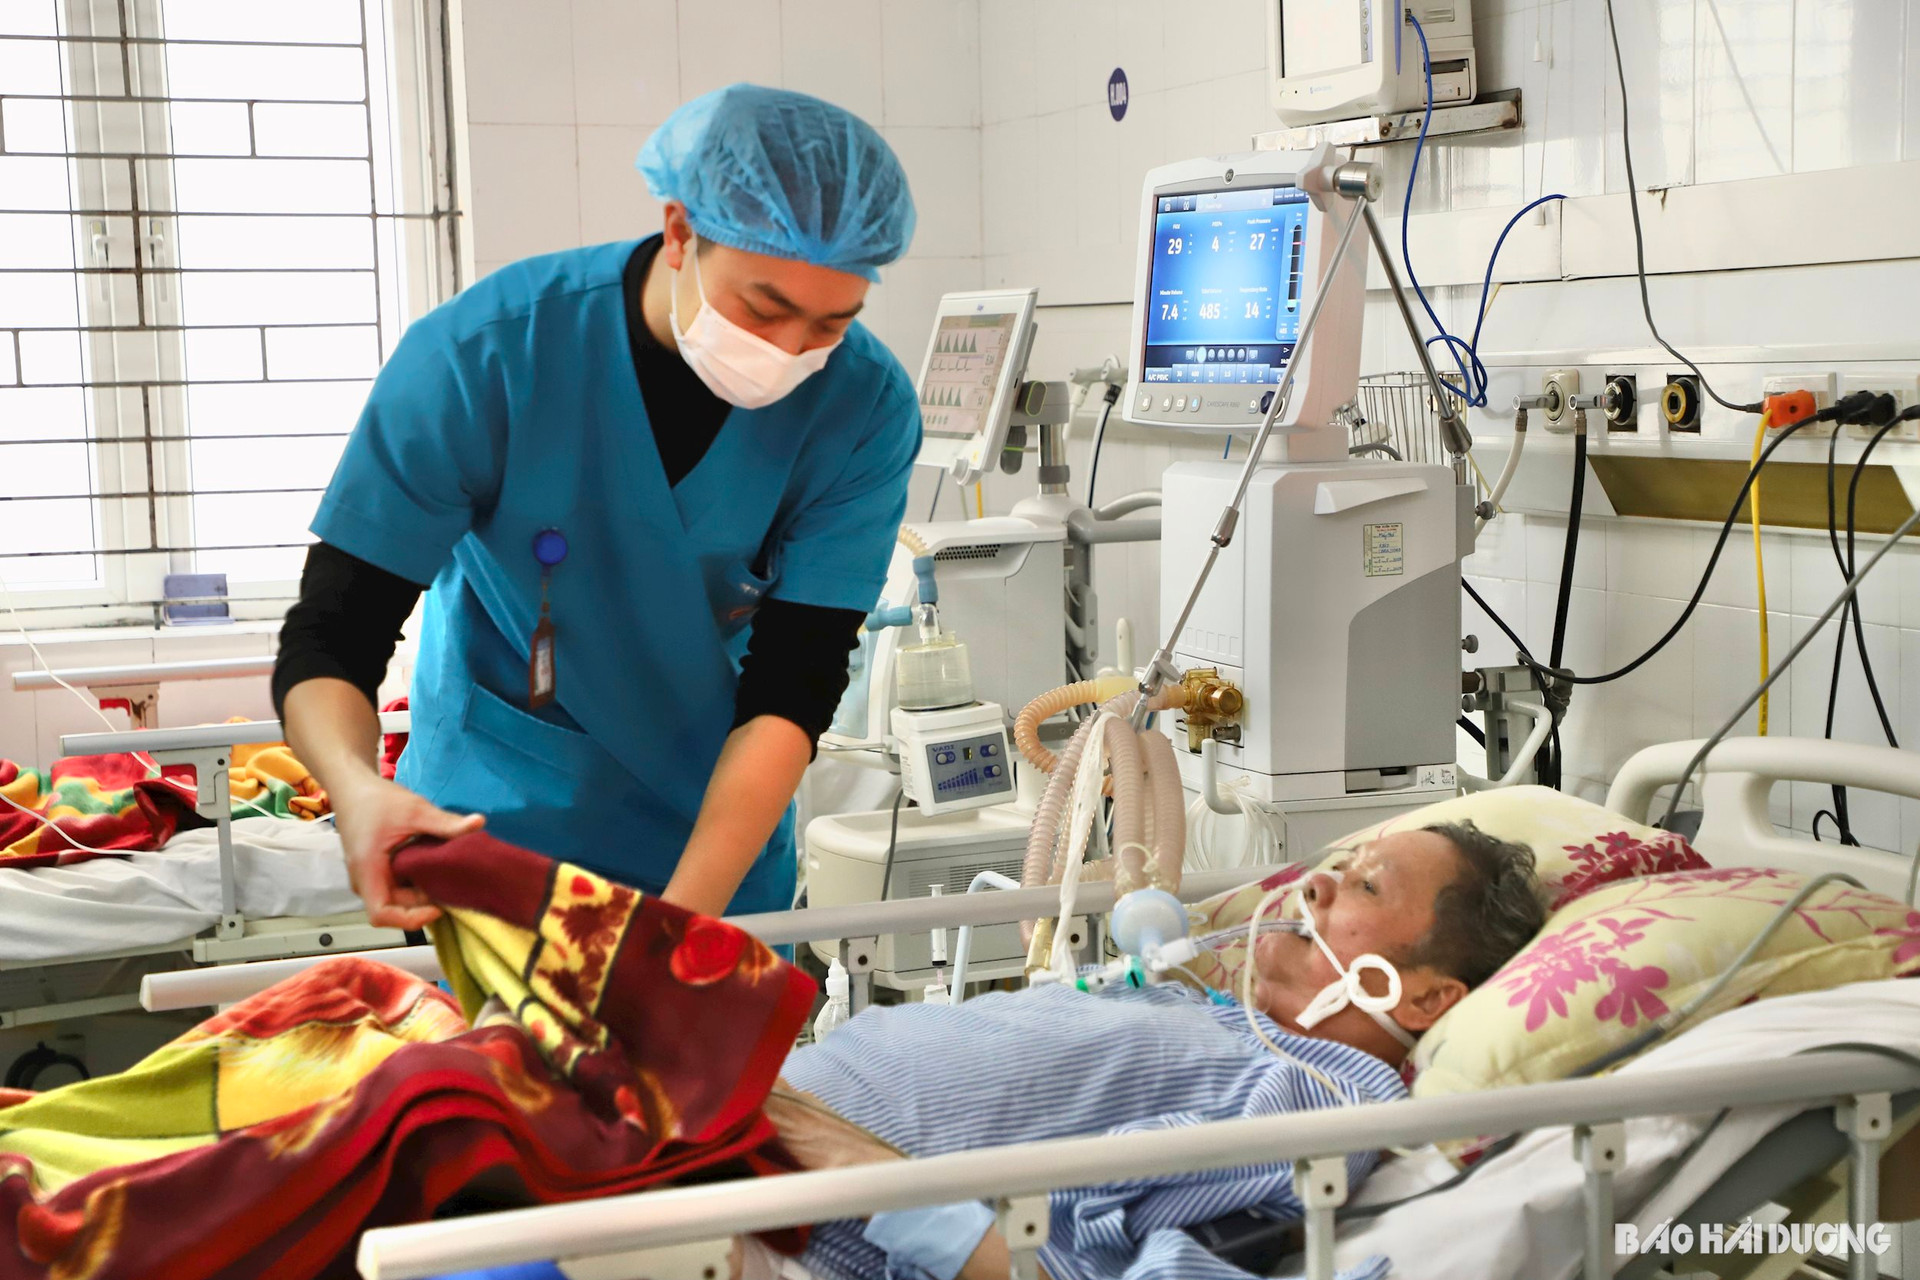 Bệnh viện Phổi Hải Dương khám và điều trị cho trên 300 lượt bệnh nhân trong dịp nghỉ lễ   